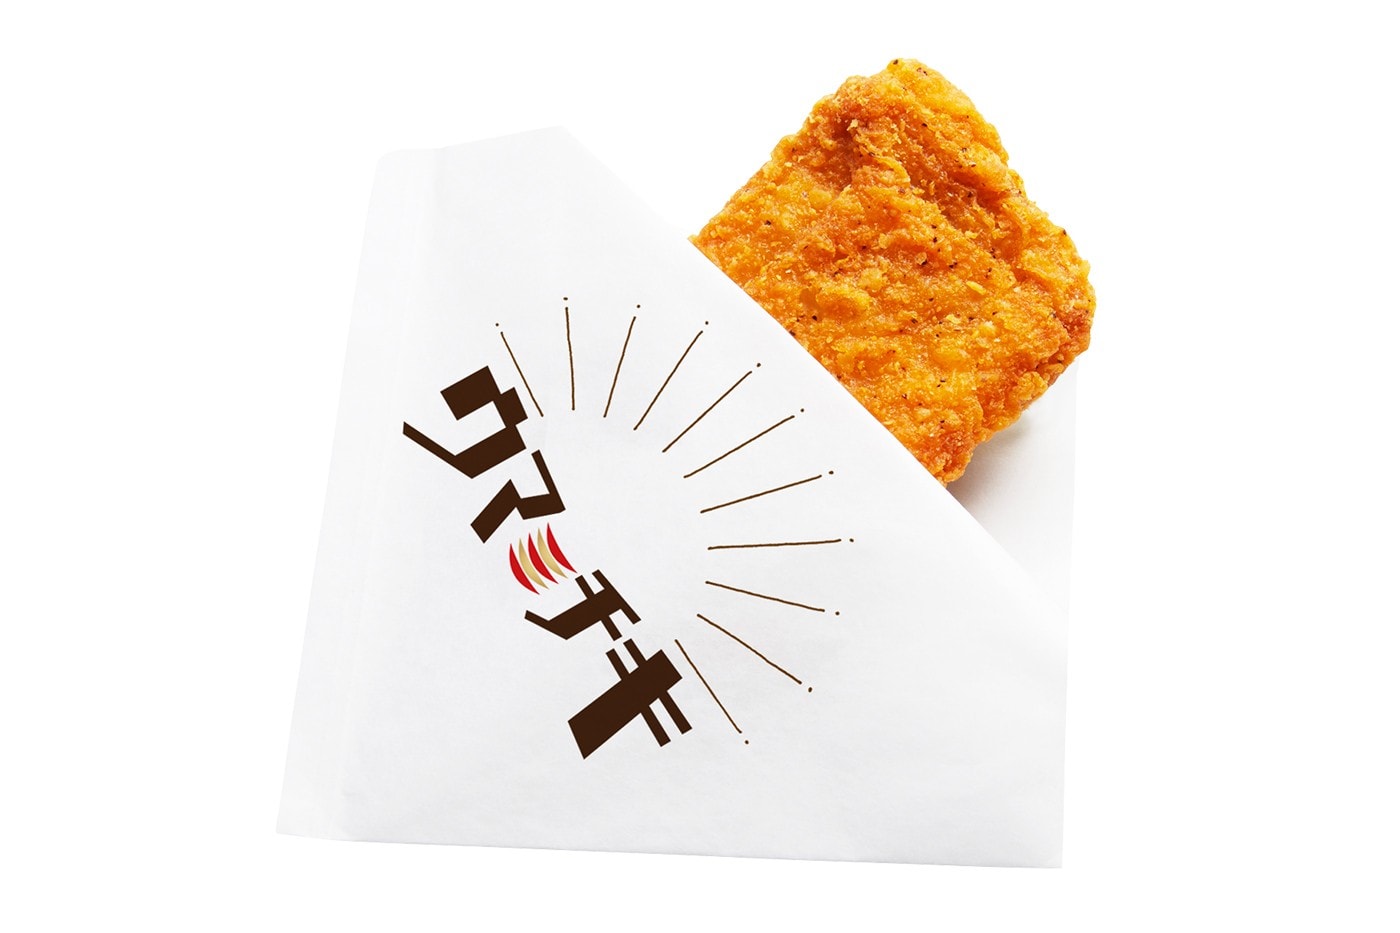 日本連鎖迴轉壽司 Kappa Sushi 推出全新「炸雞」握壽司